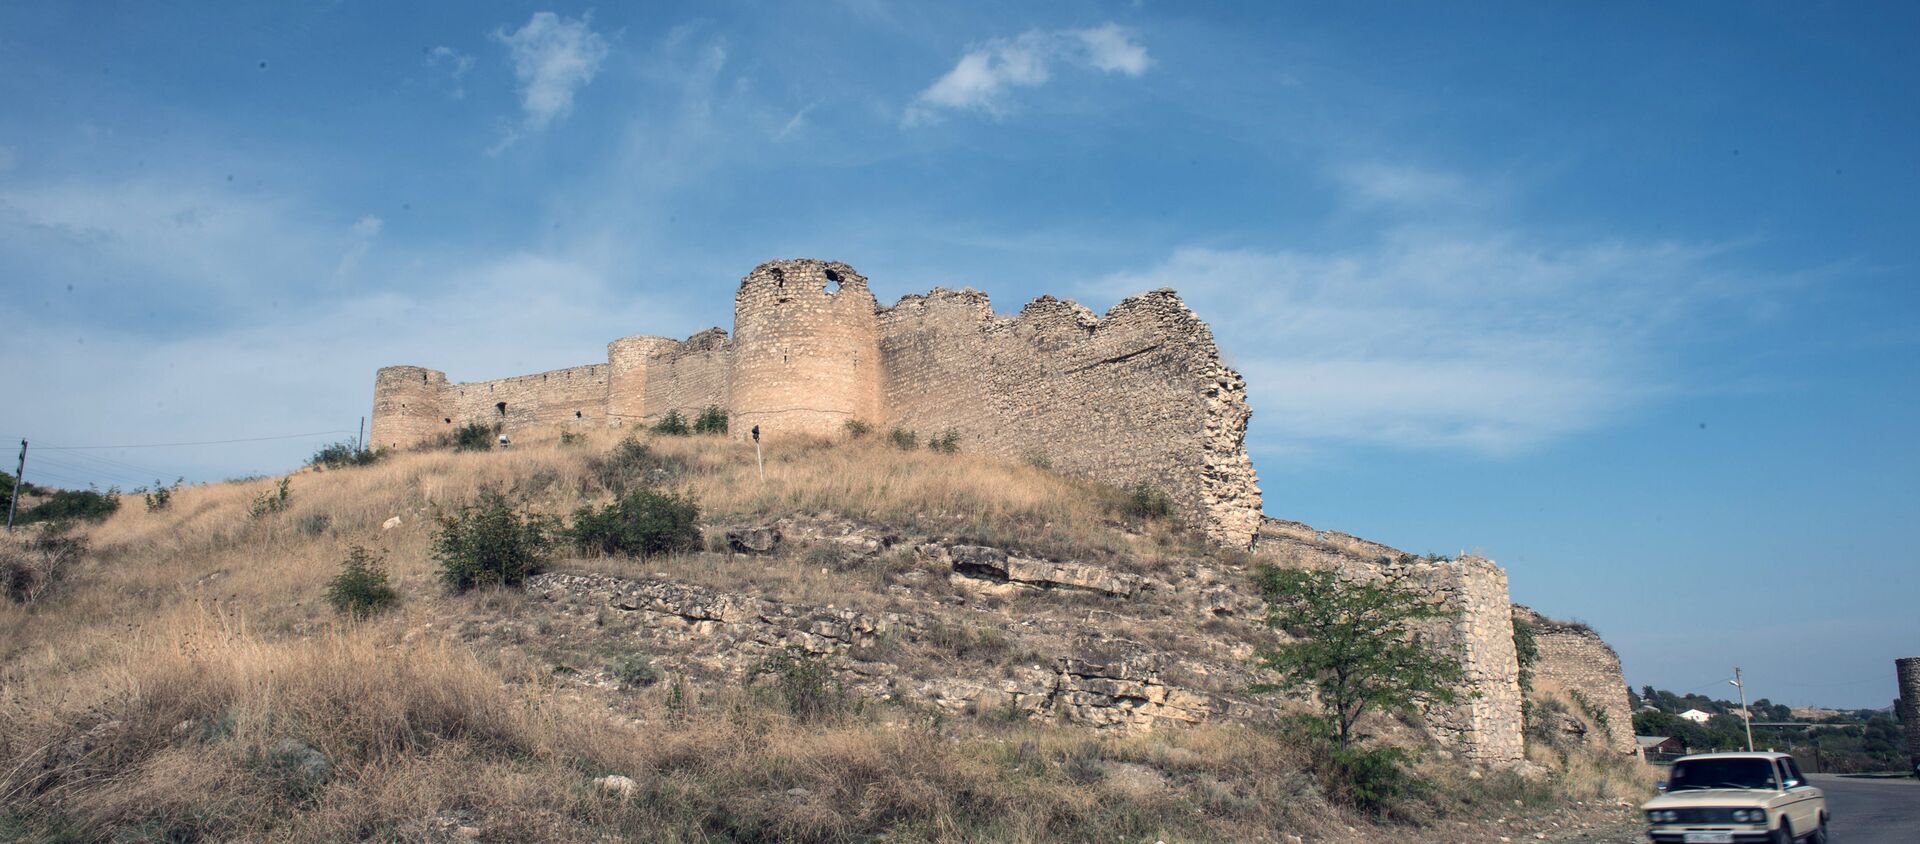 Аскеранская крепость, фото из архива - Sputnik Azərbaycan, 1920, 06.11.2020